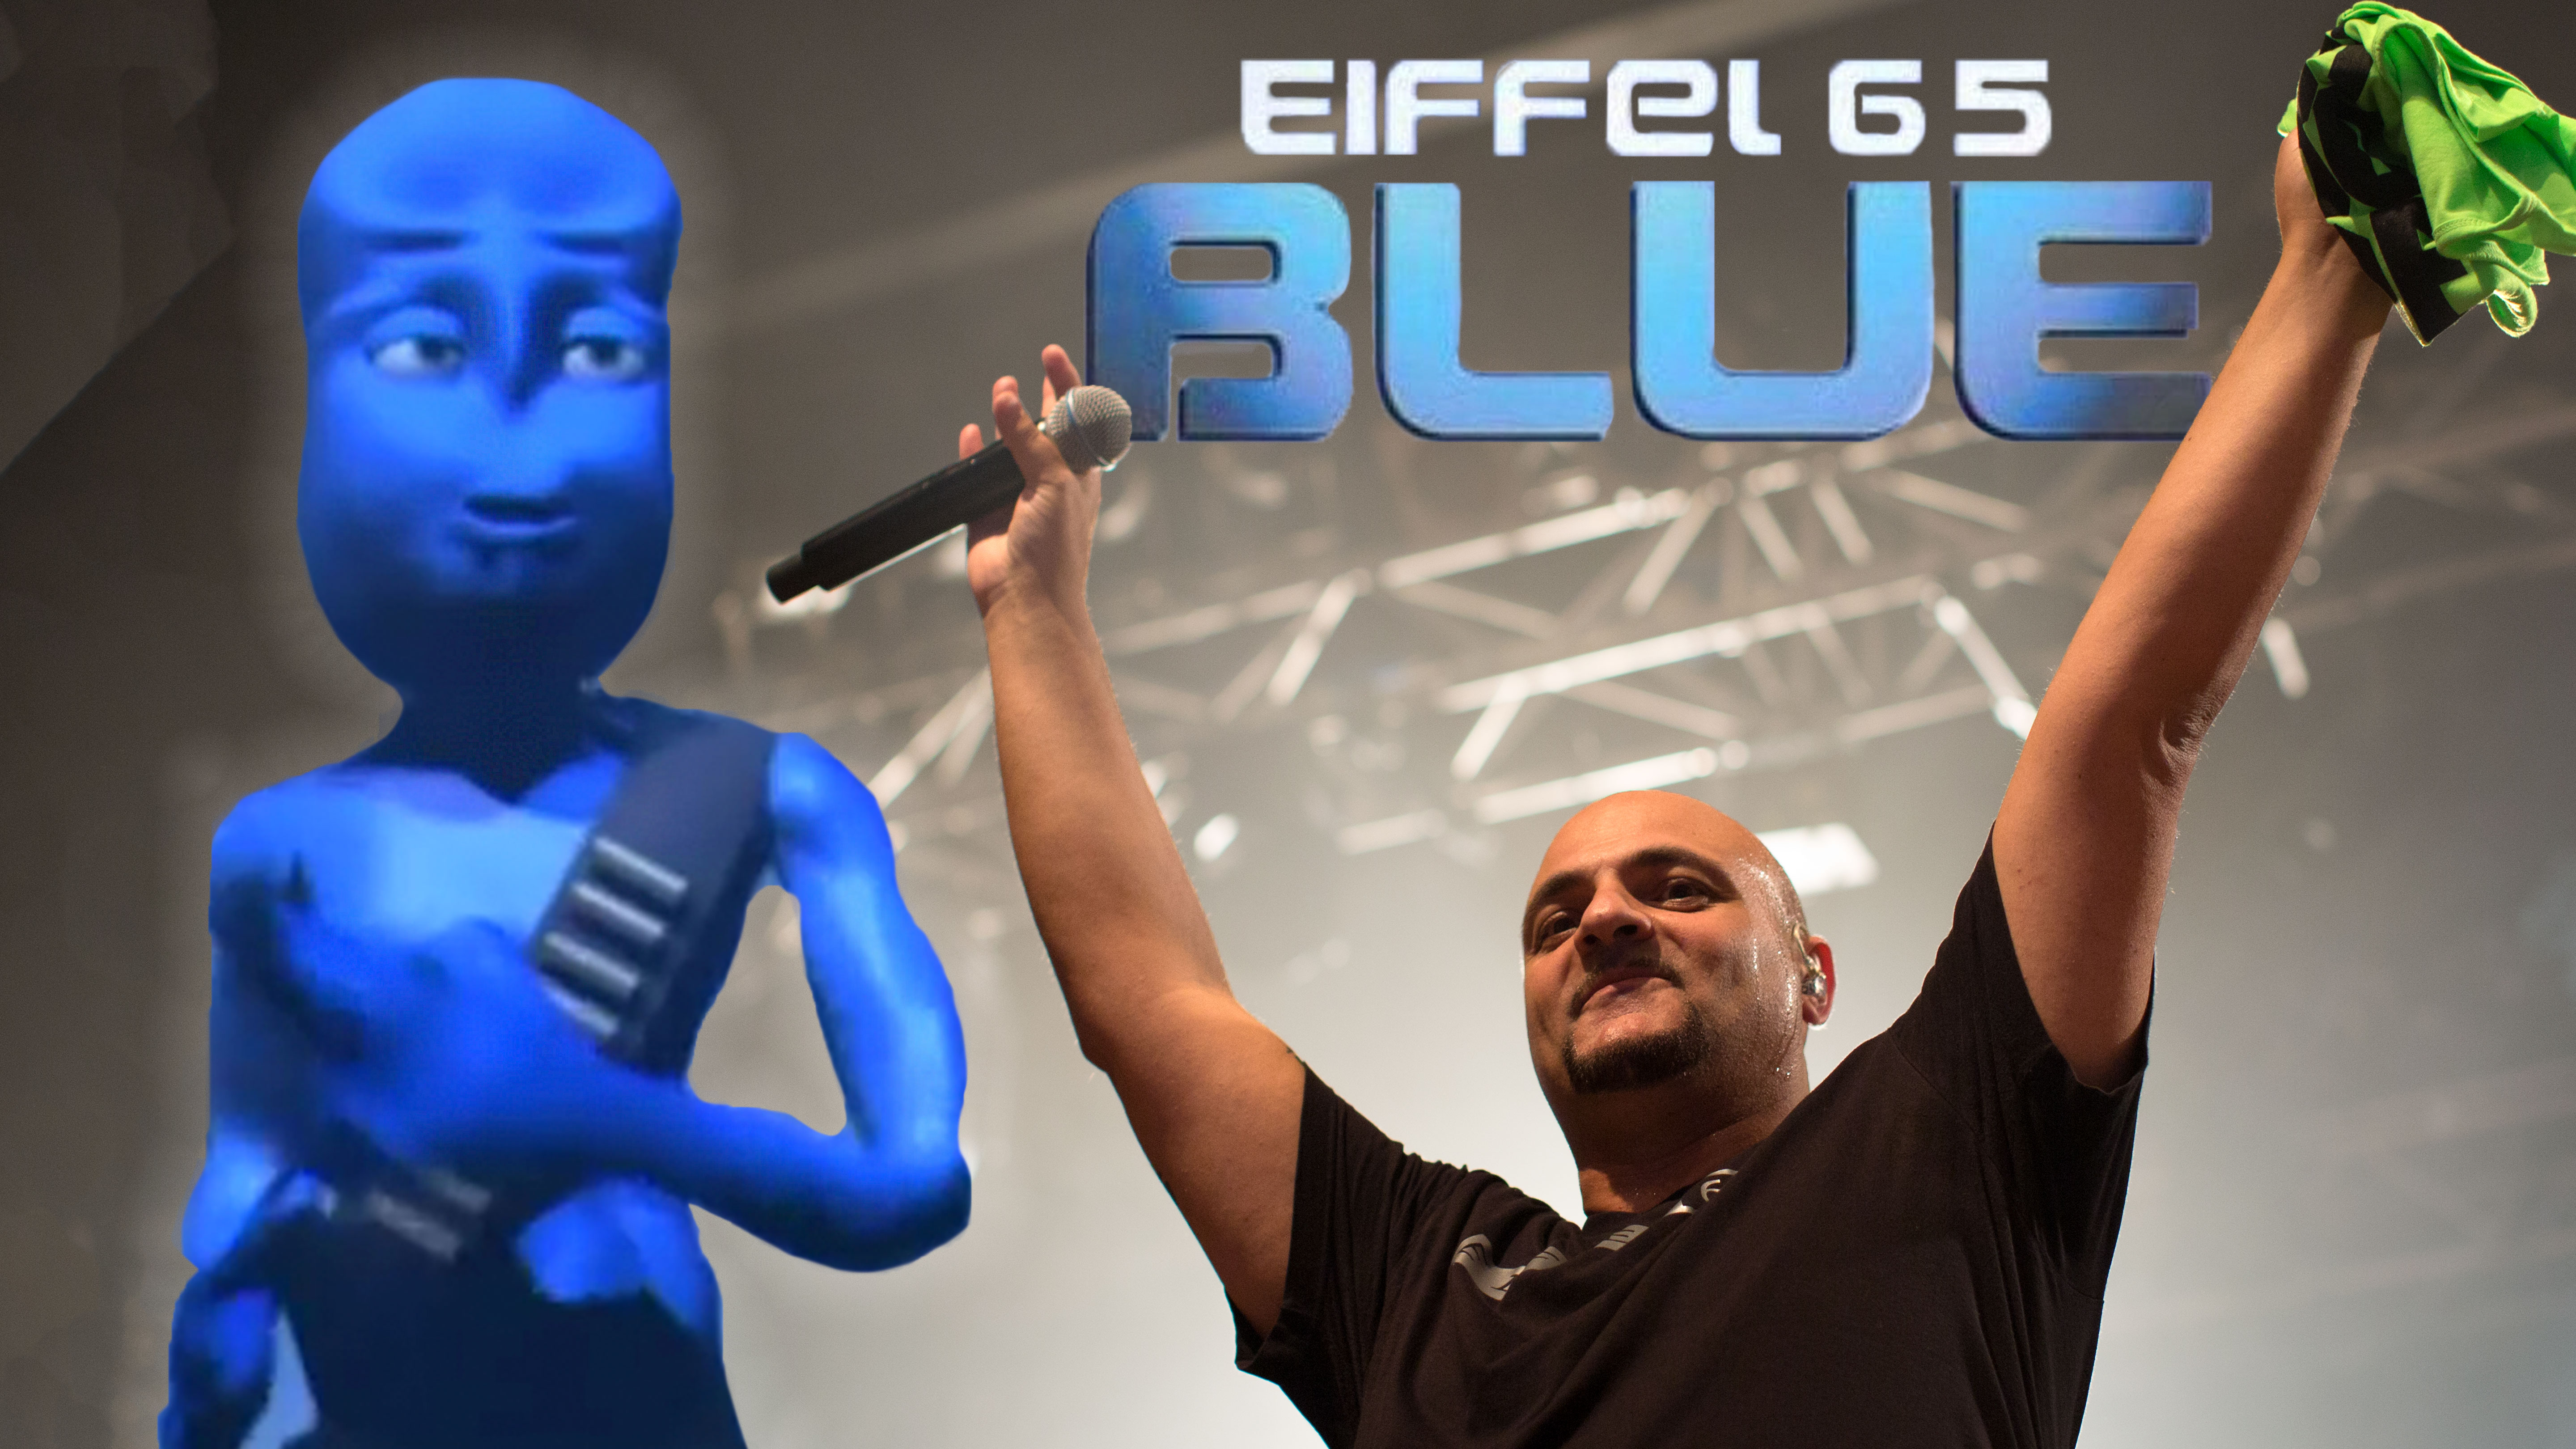 eiffel 65 blue 2013